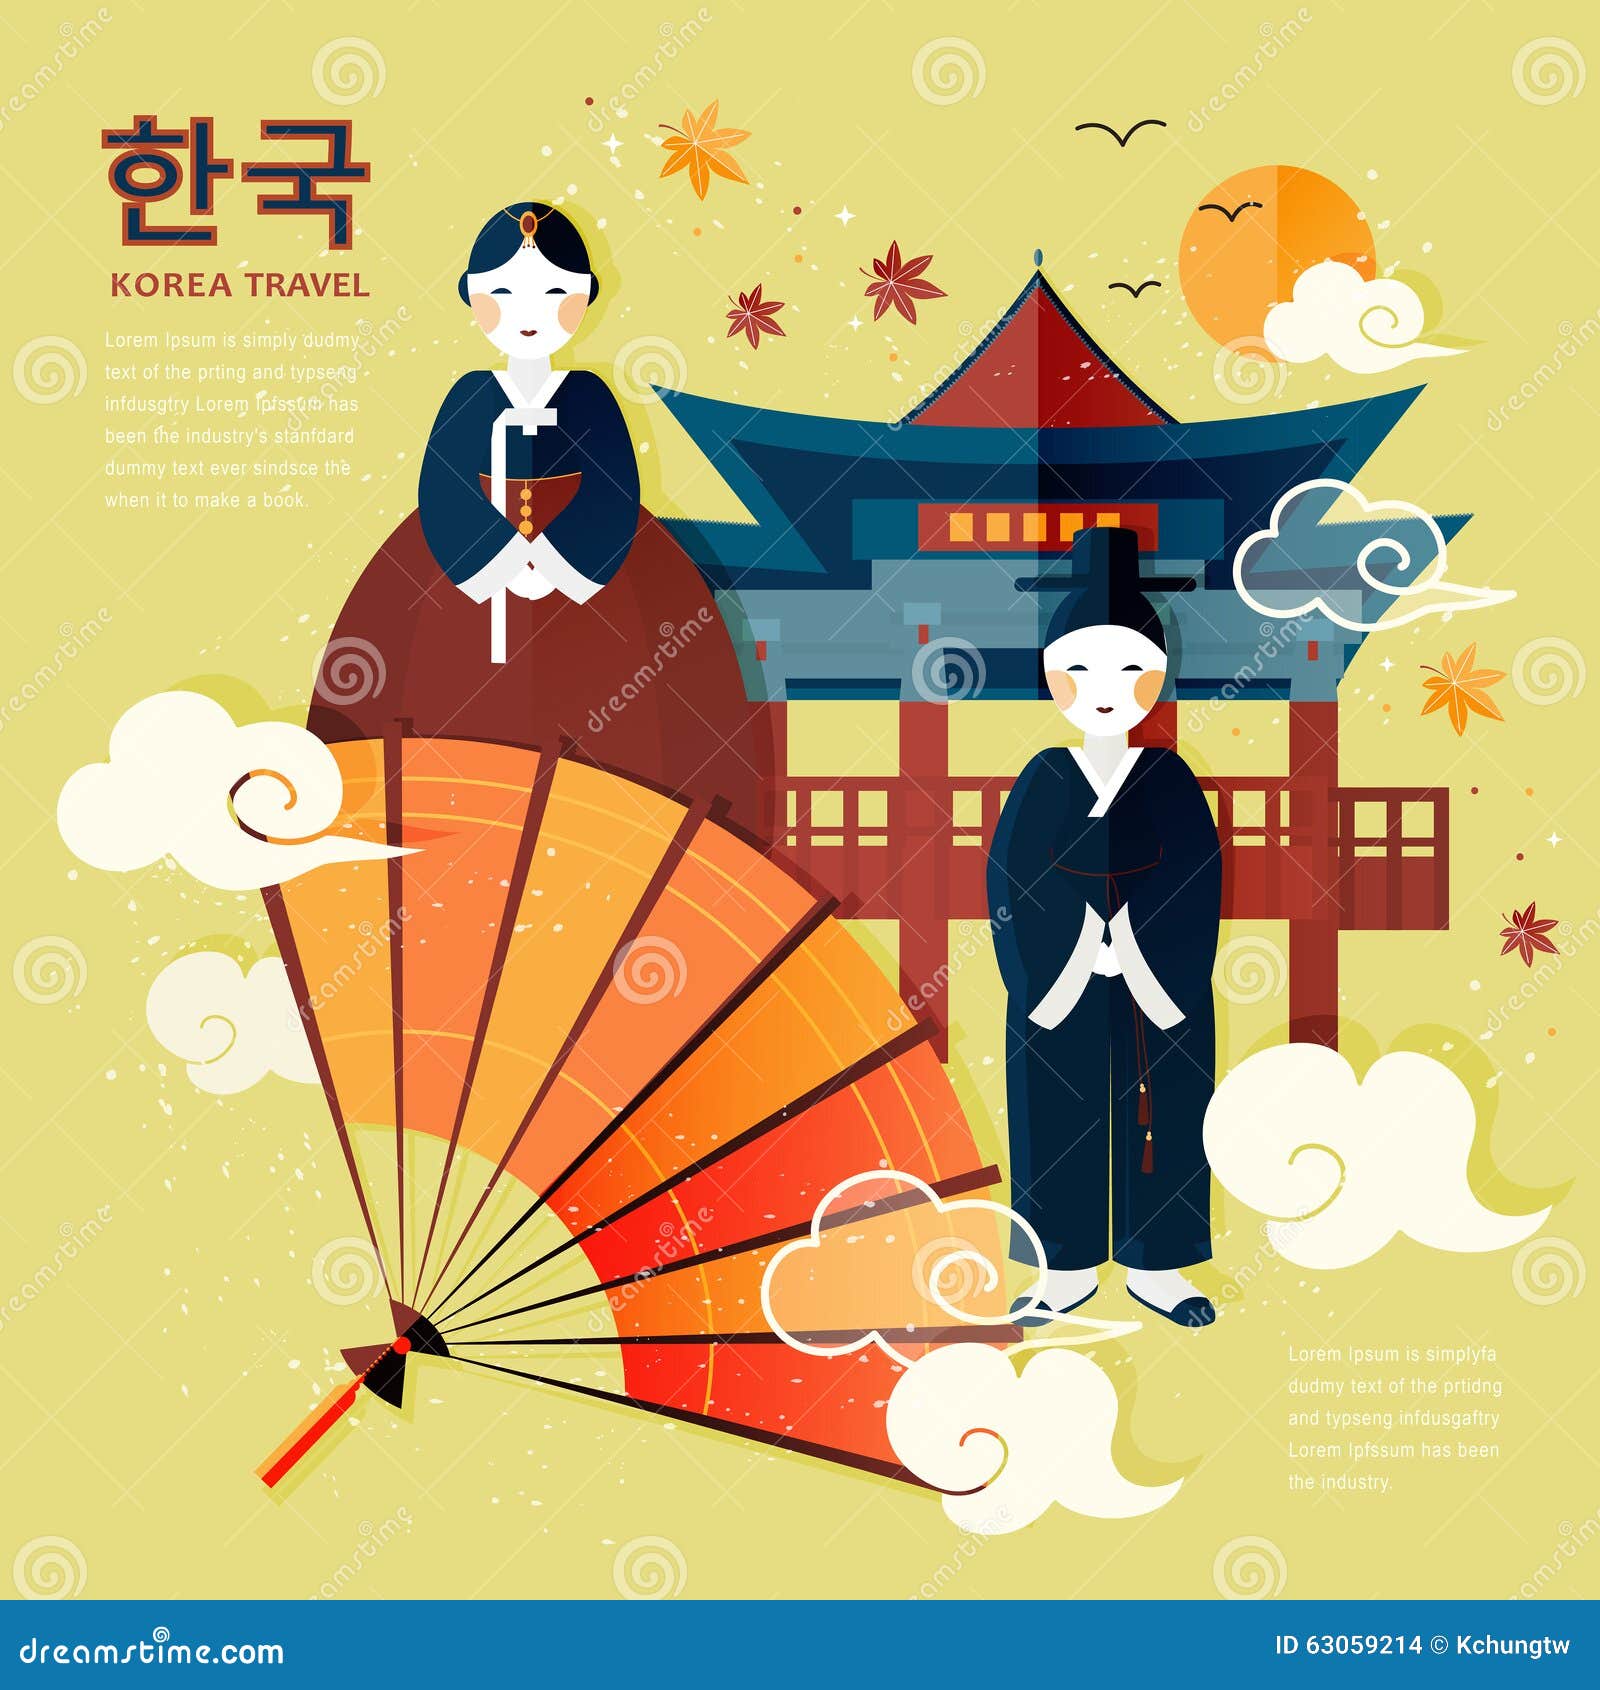 Постеры на тему корейской культуры